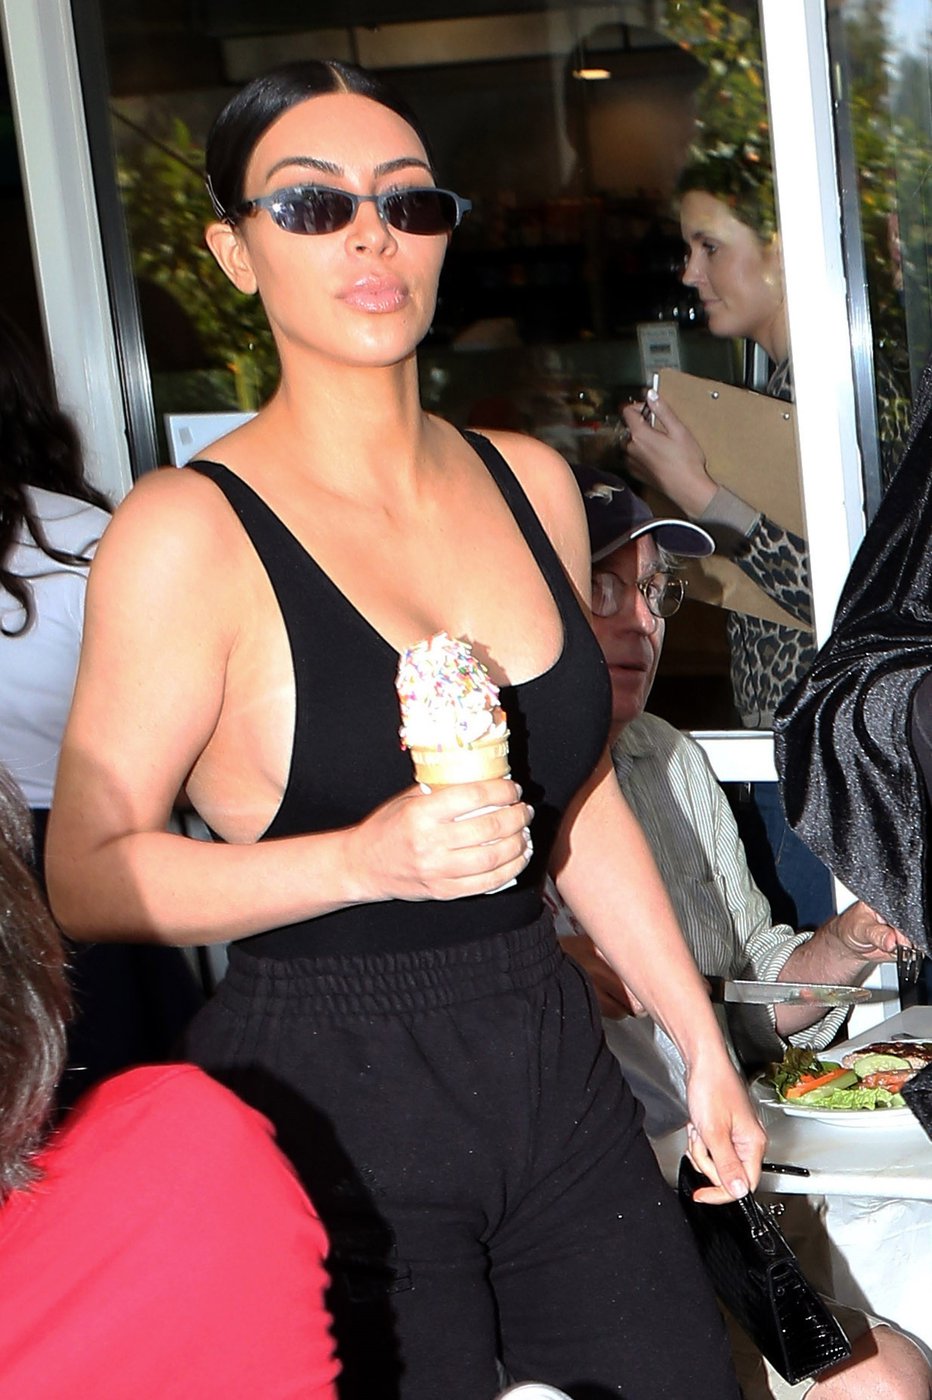 Fotografija: Naj hrusta. Nekateri prisegajo na sladoled v lončkih, a ne Kim Kardashian. Njena prva izbira je kornet.